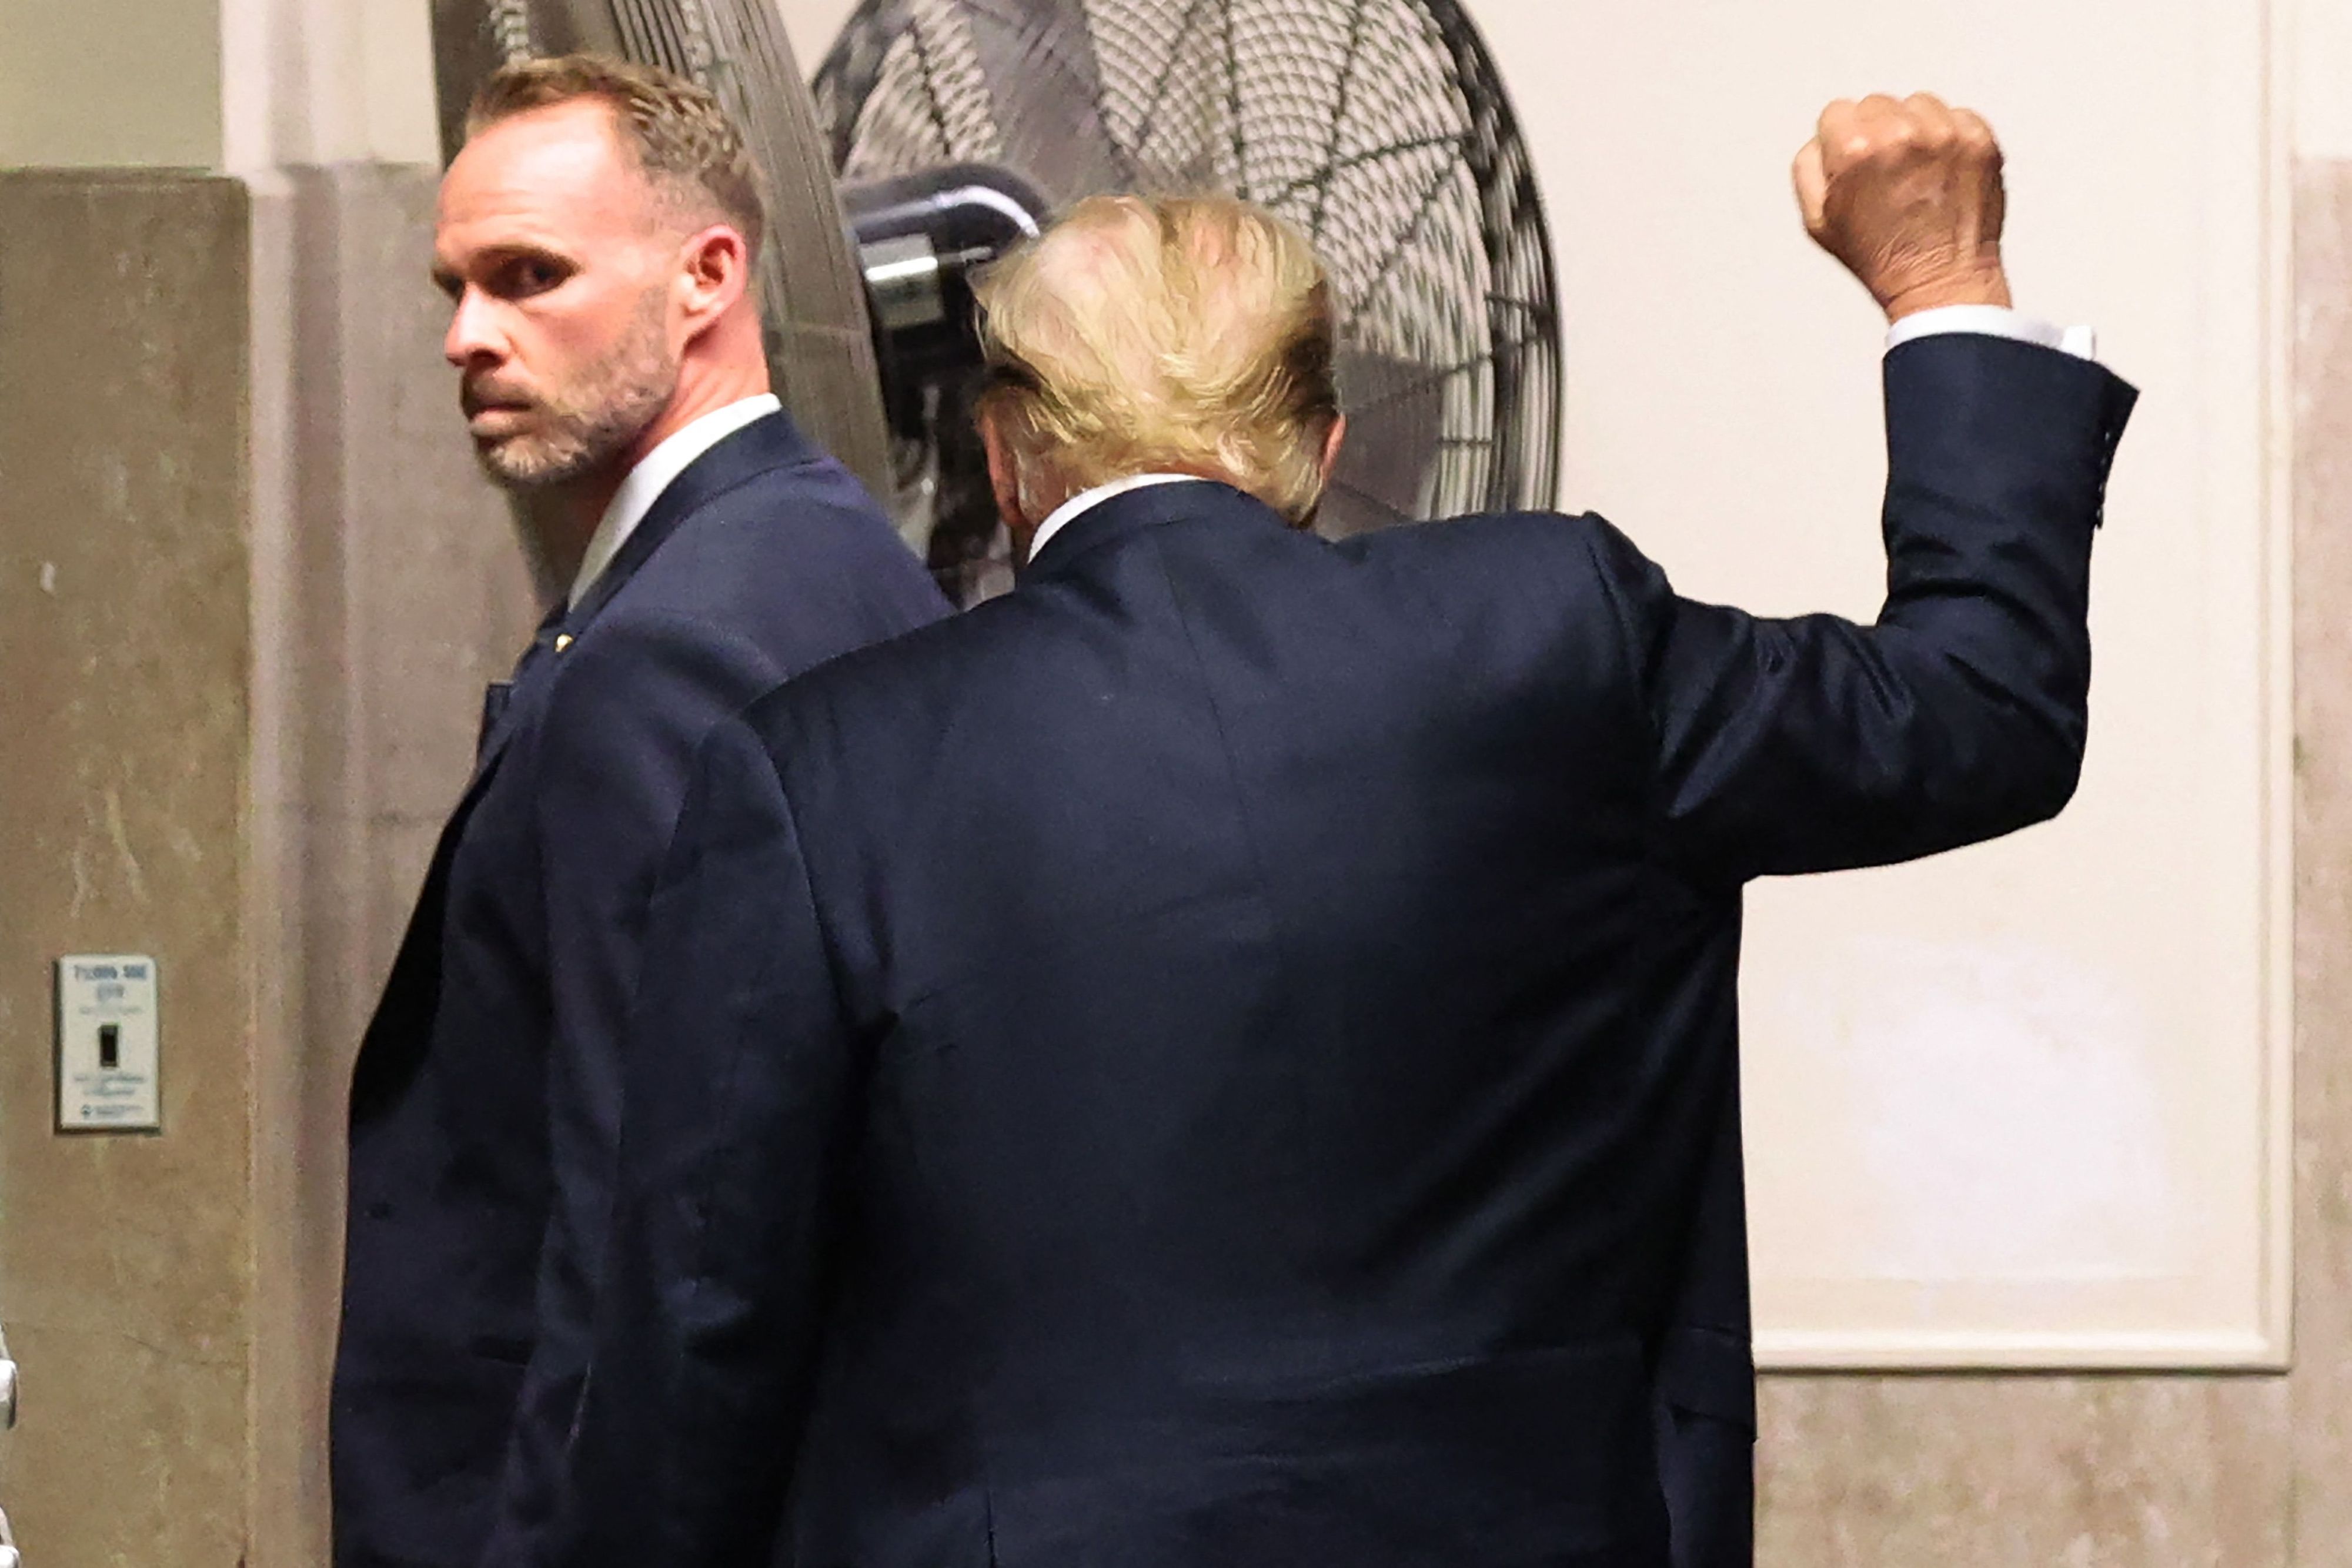 Geschlagen, aber kampfeslustig: Trump beim Abgang aus dem Gericht